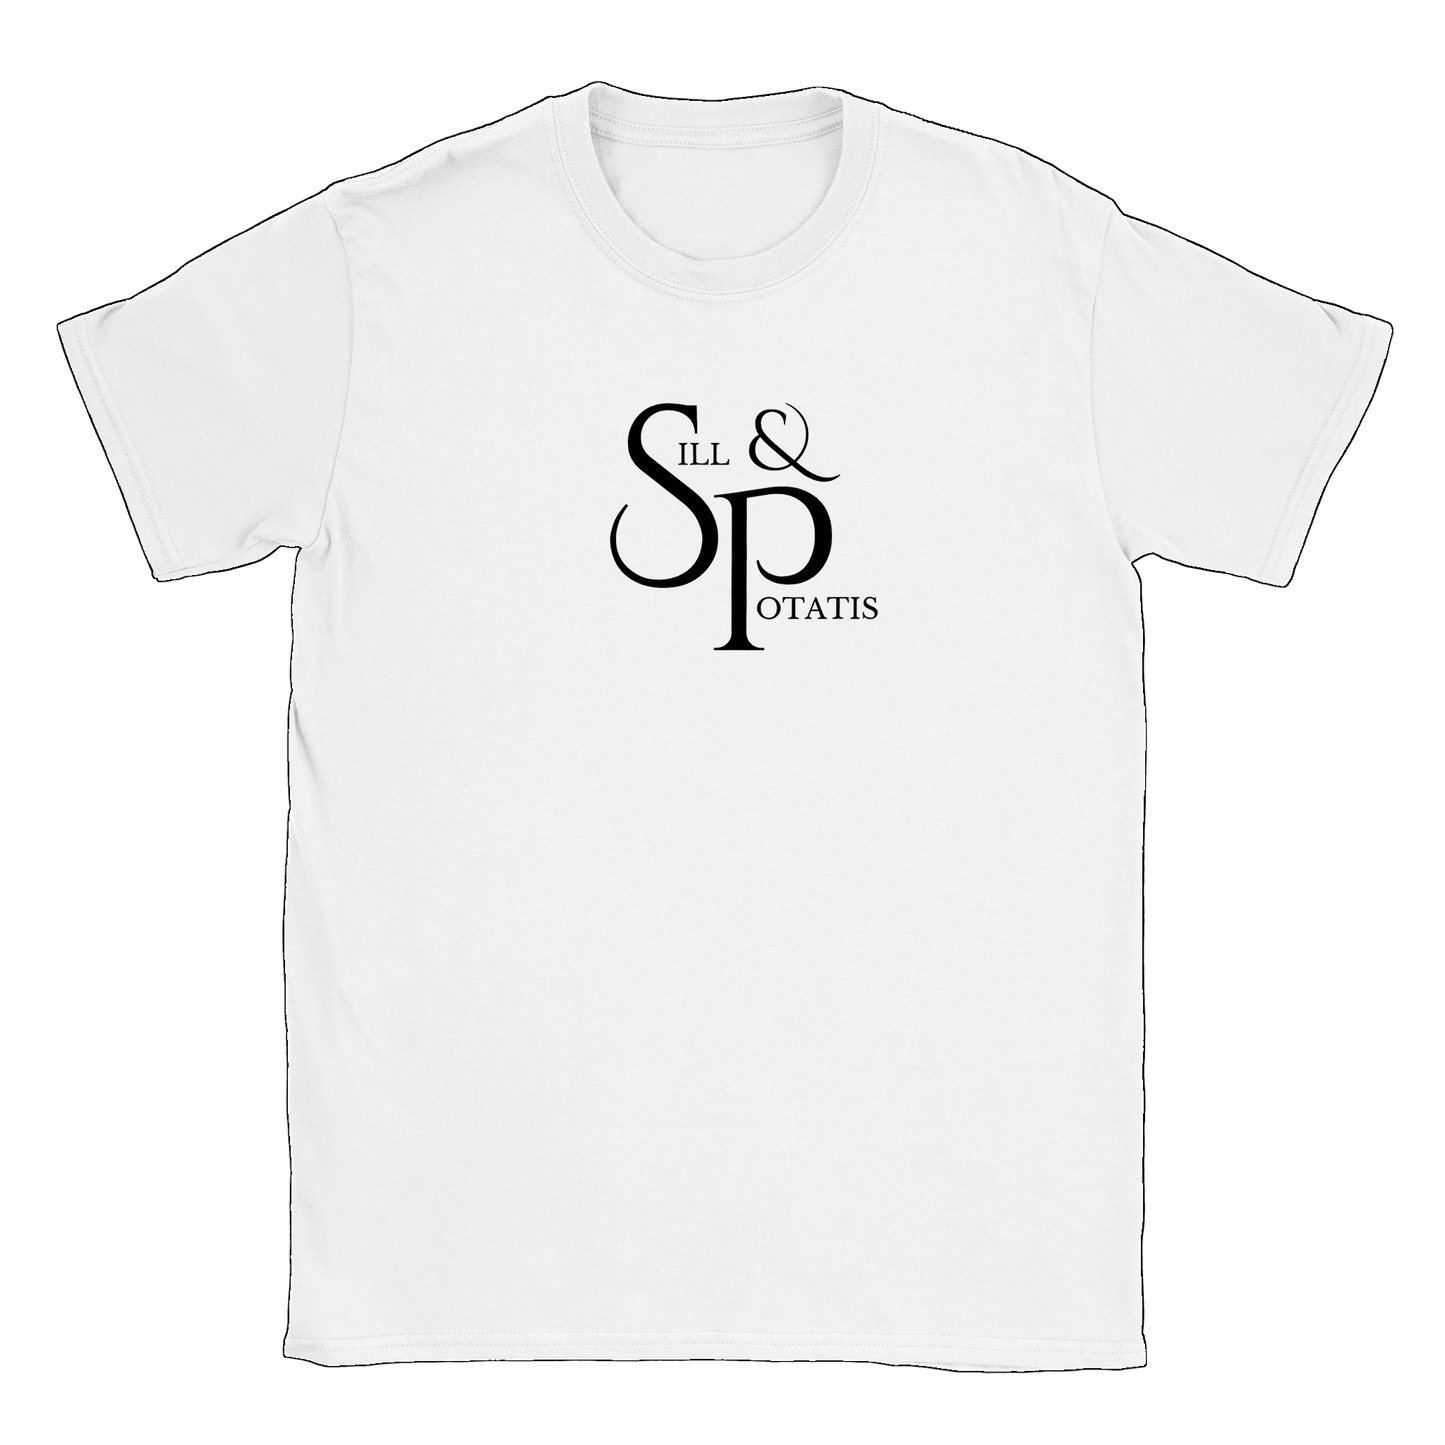 Sill och Potatis - T-shirt Vit